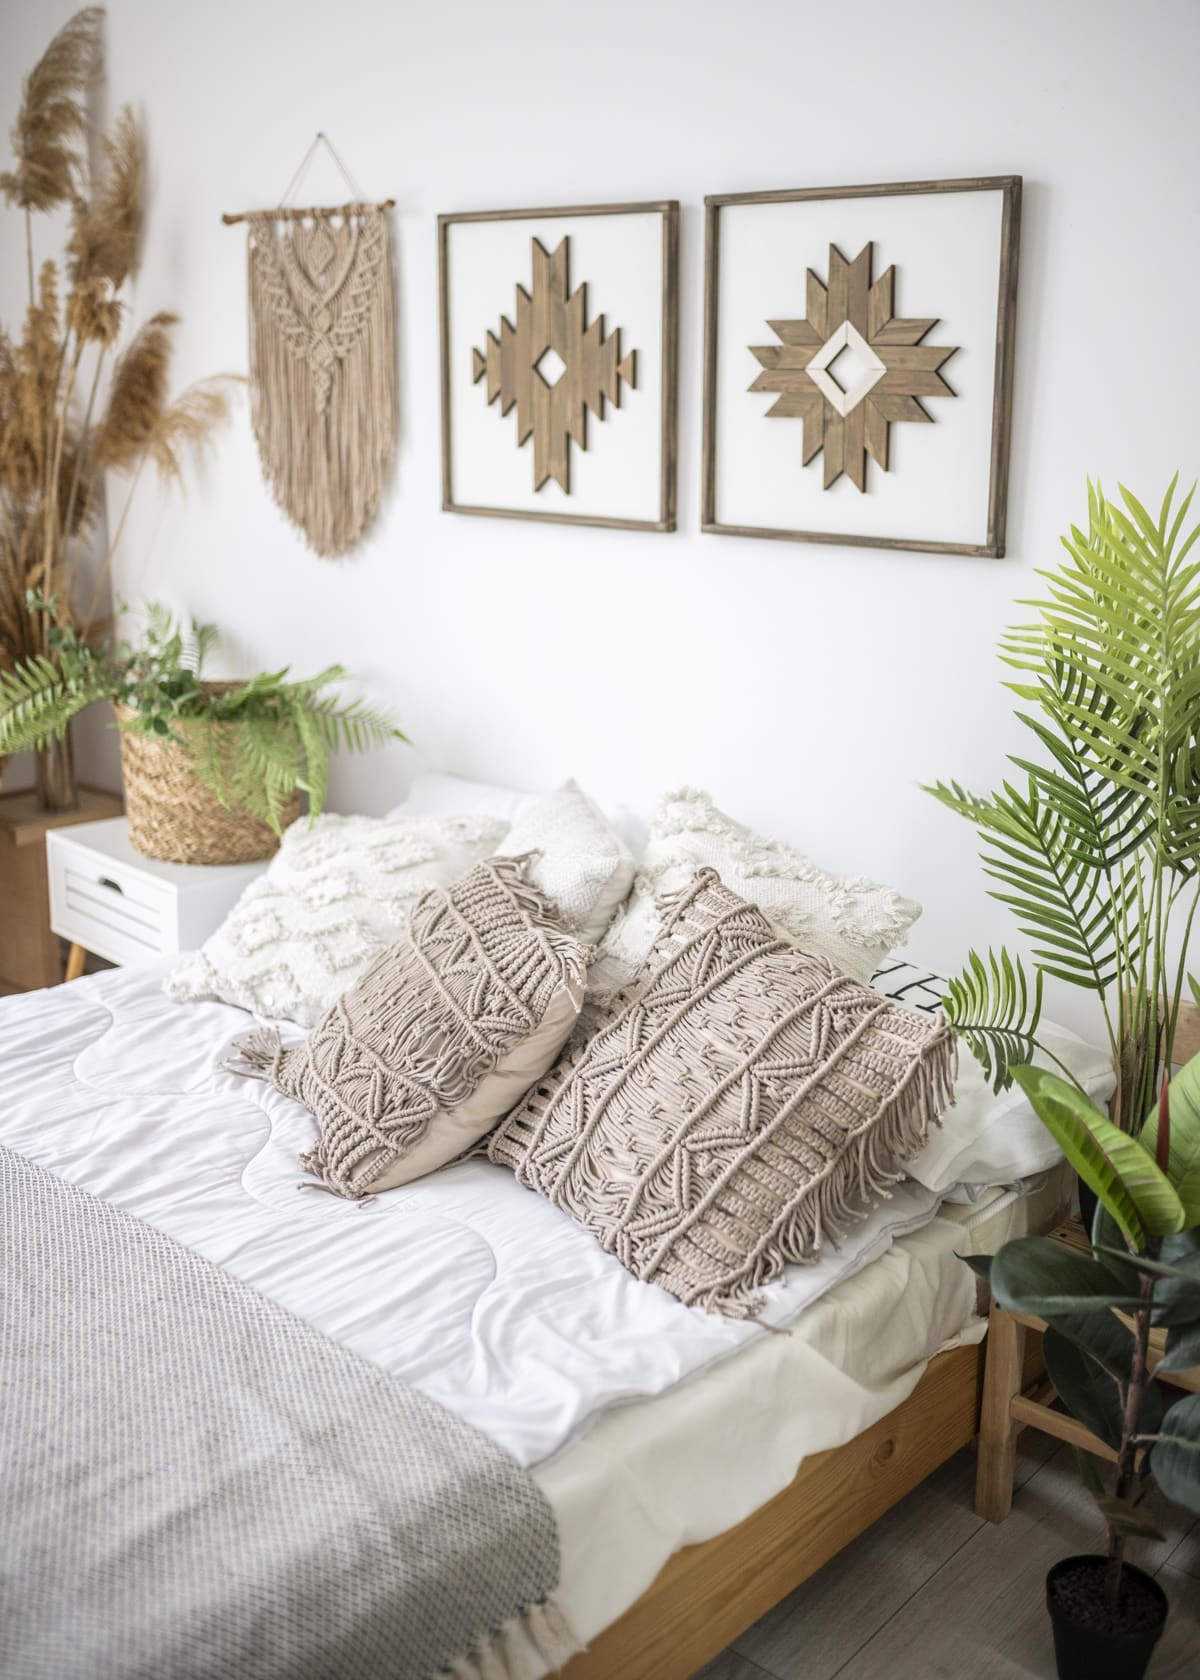 ככה תעצבו חדר שינה מהמם ב-5 צעדים פשוטים גרדן מרקט home indoor design concept